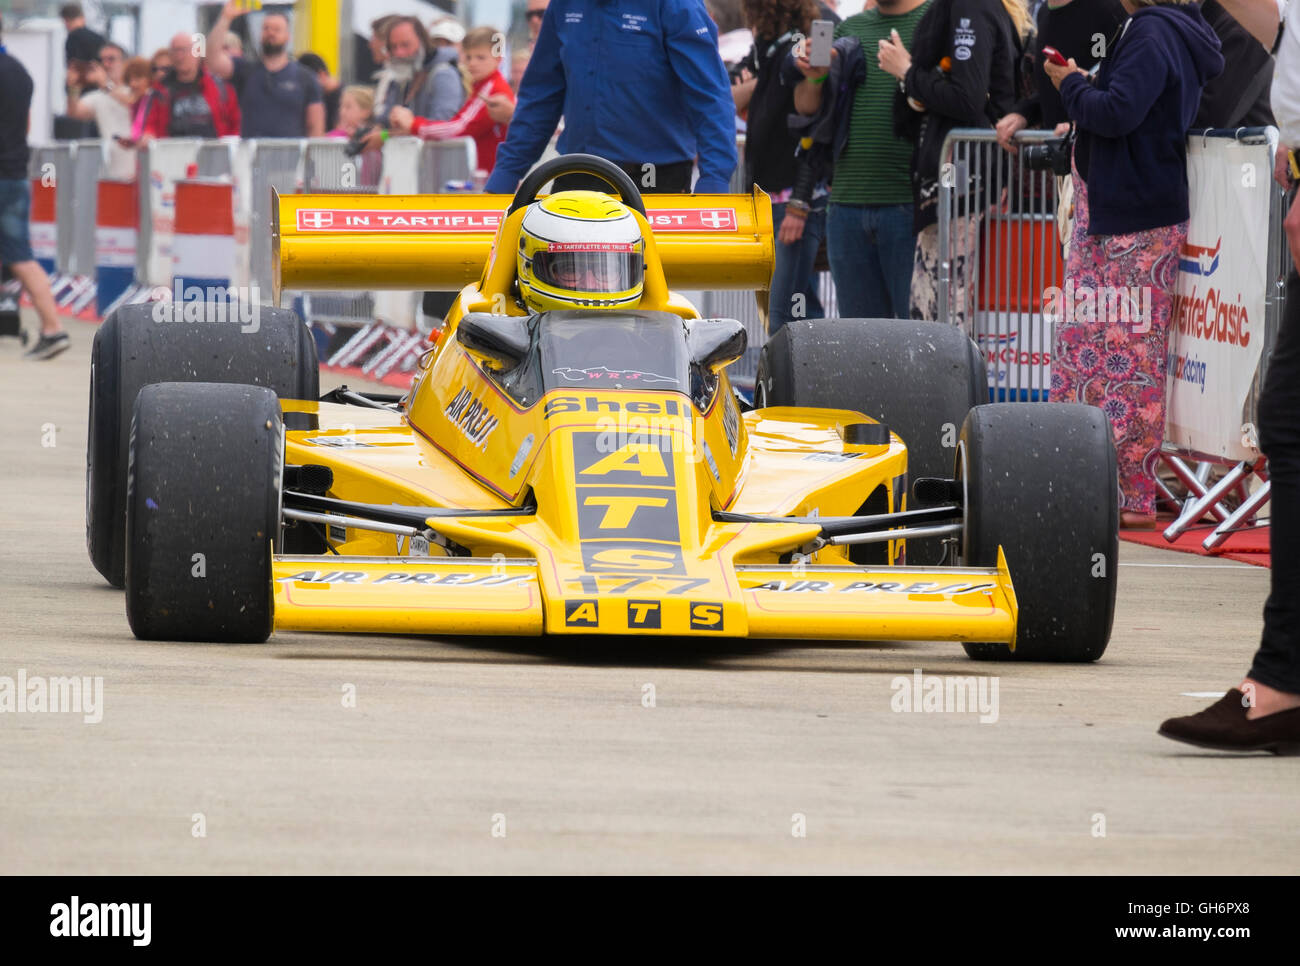 ATS de coche de carreras de F1 de Christian Perrier en el paddock en FIA Histórico Masters carrera de Fórmula 1, 2016 caso clásico de Silverstone. Foto de stock